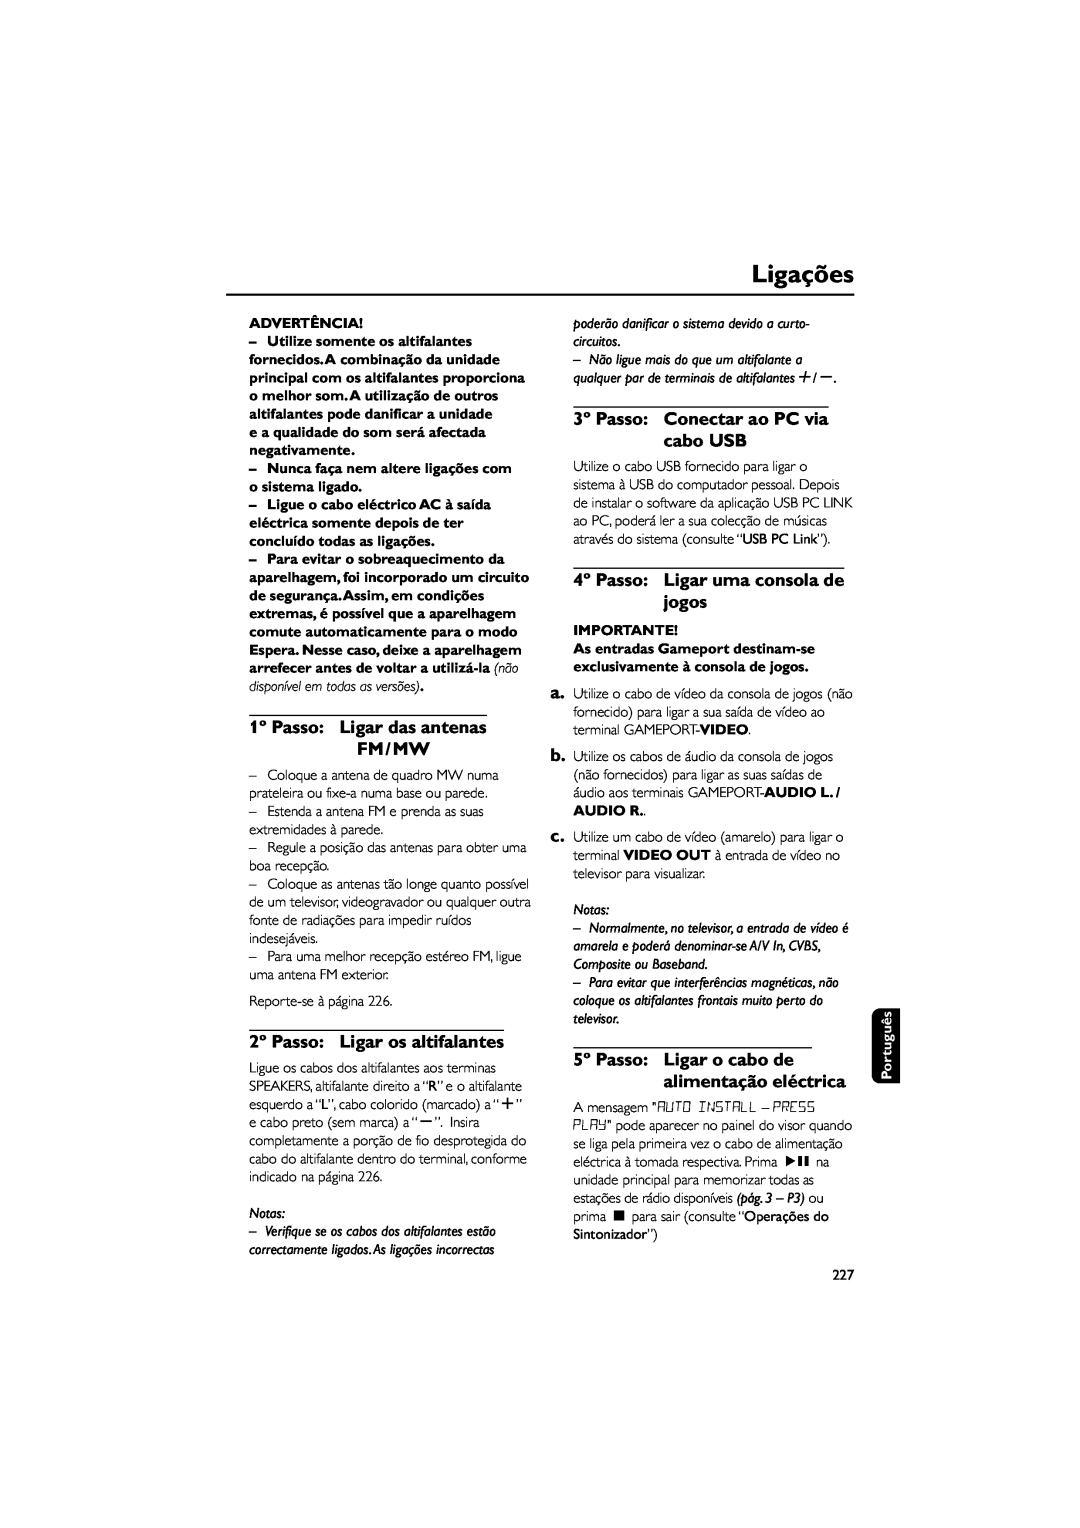 Philips FWM589 manual Ligações, 5º Passo Ligar o cabo de alimentação eléctrica, Advertência, Importante, Notas 